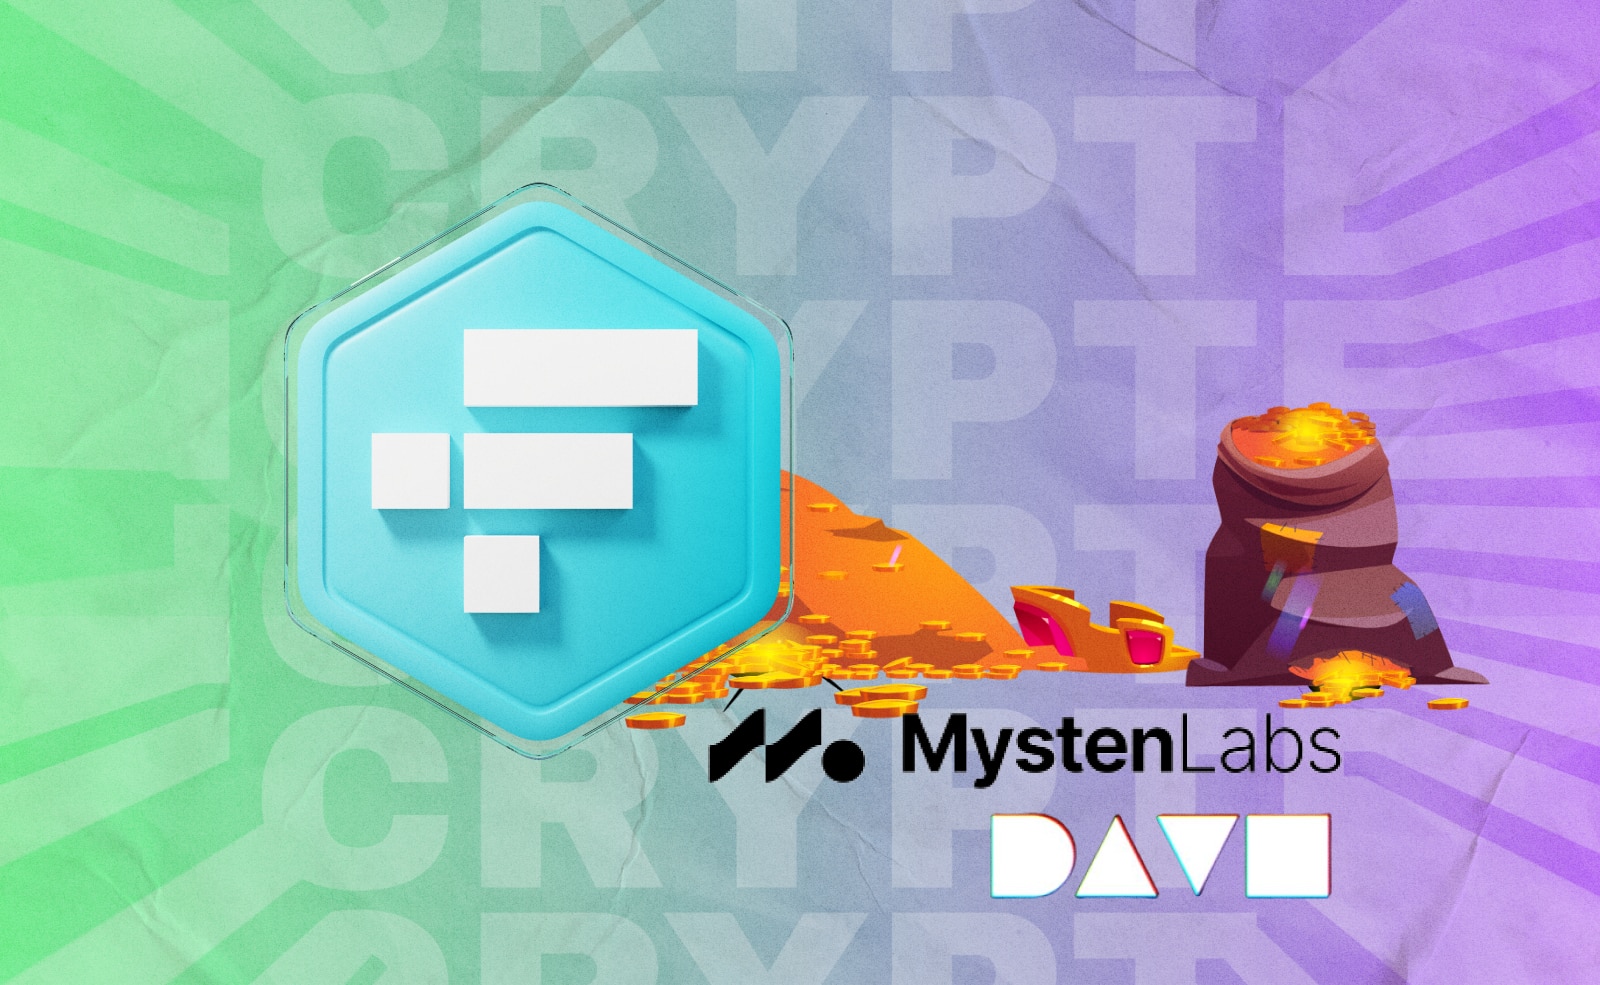 Криптобиржа FTX провела две венчурные инвестиции, используя в каждой по $100 млн клиентских средств.: в стартап Dave и Mysten Labs